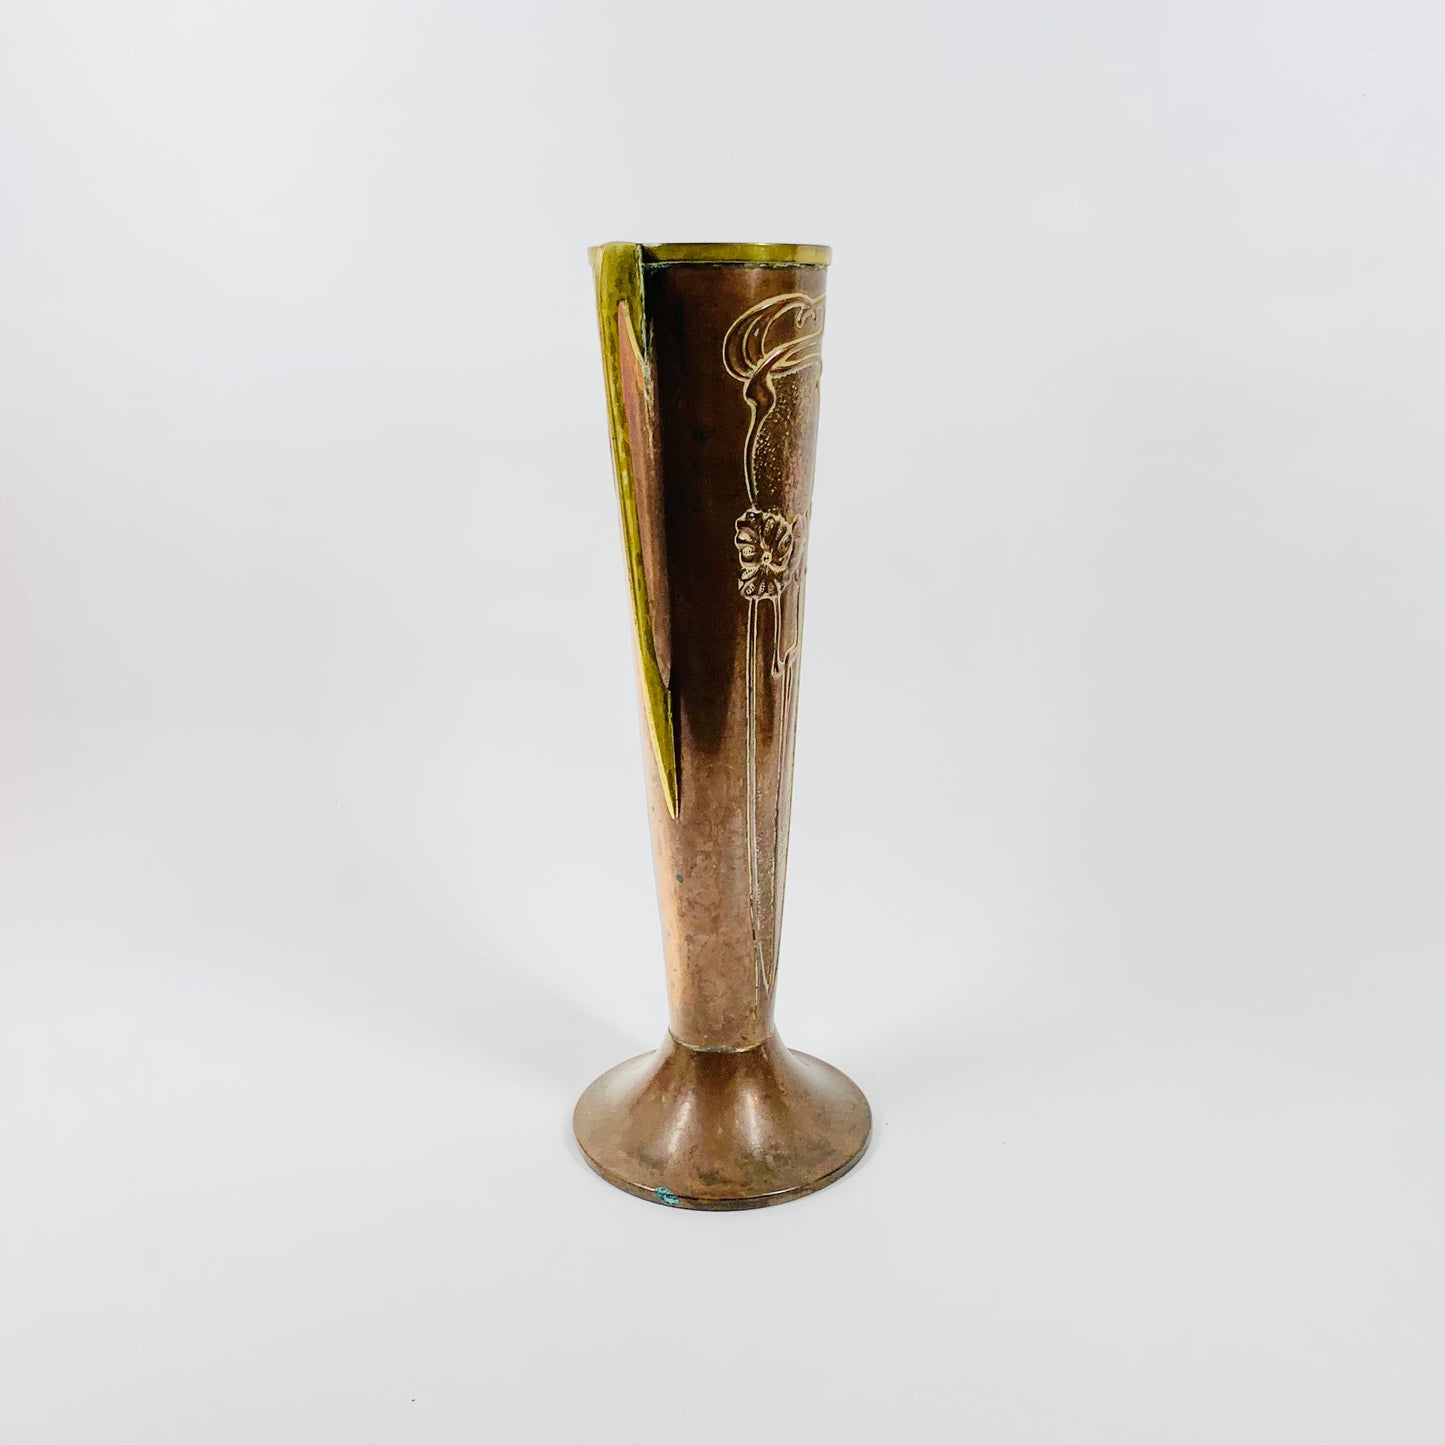 Antique Art Nouveau Beldray vase with floral motif